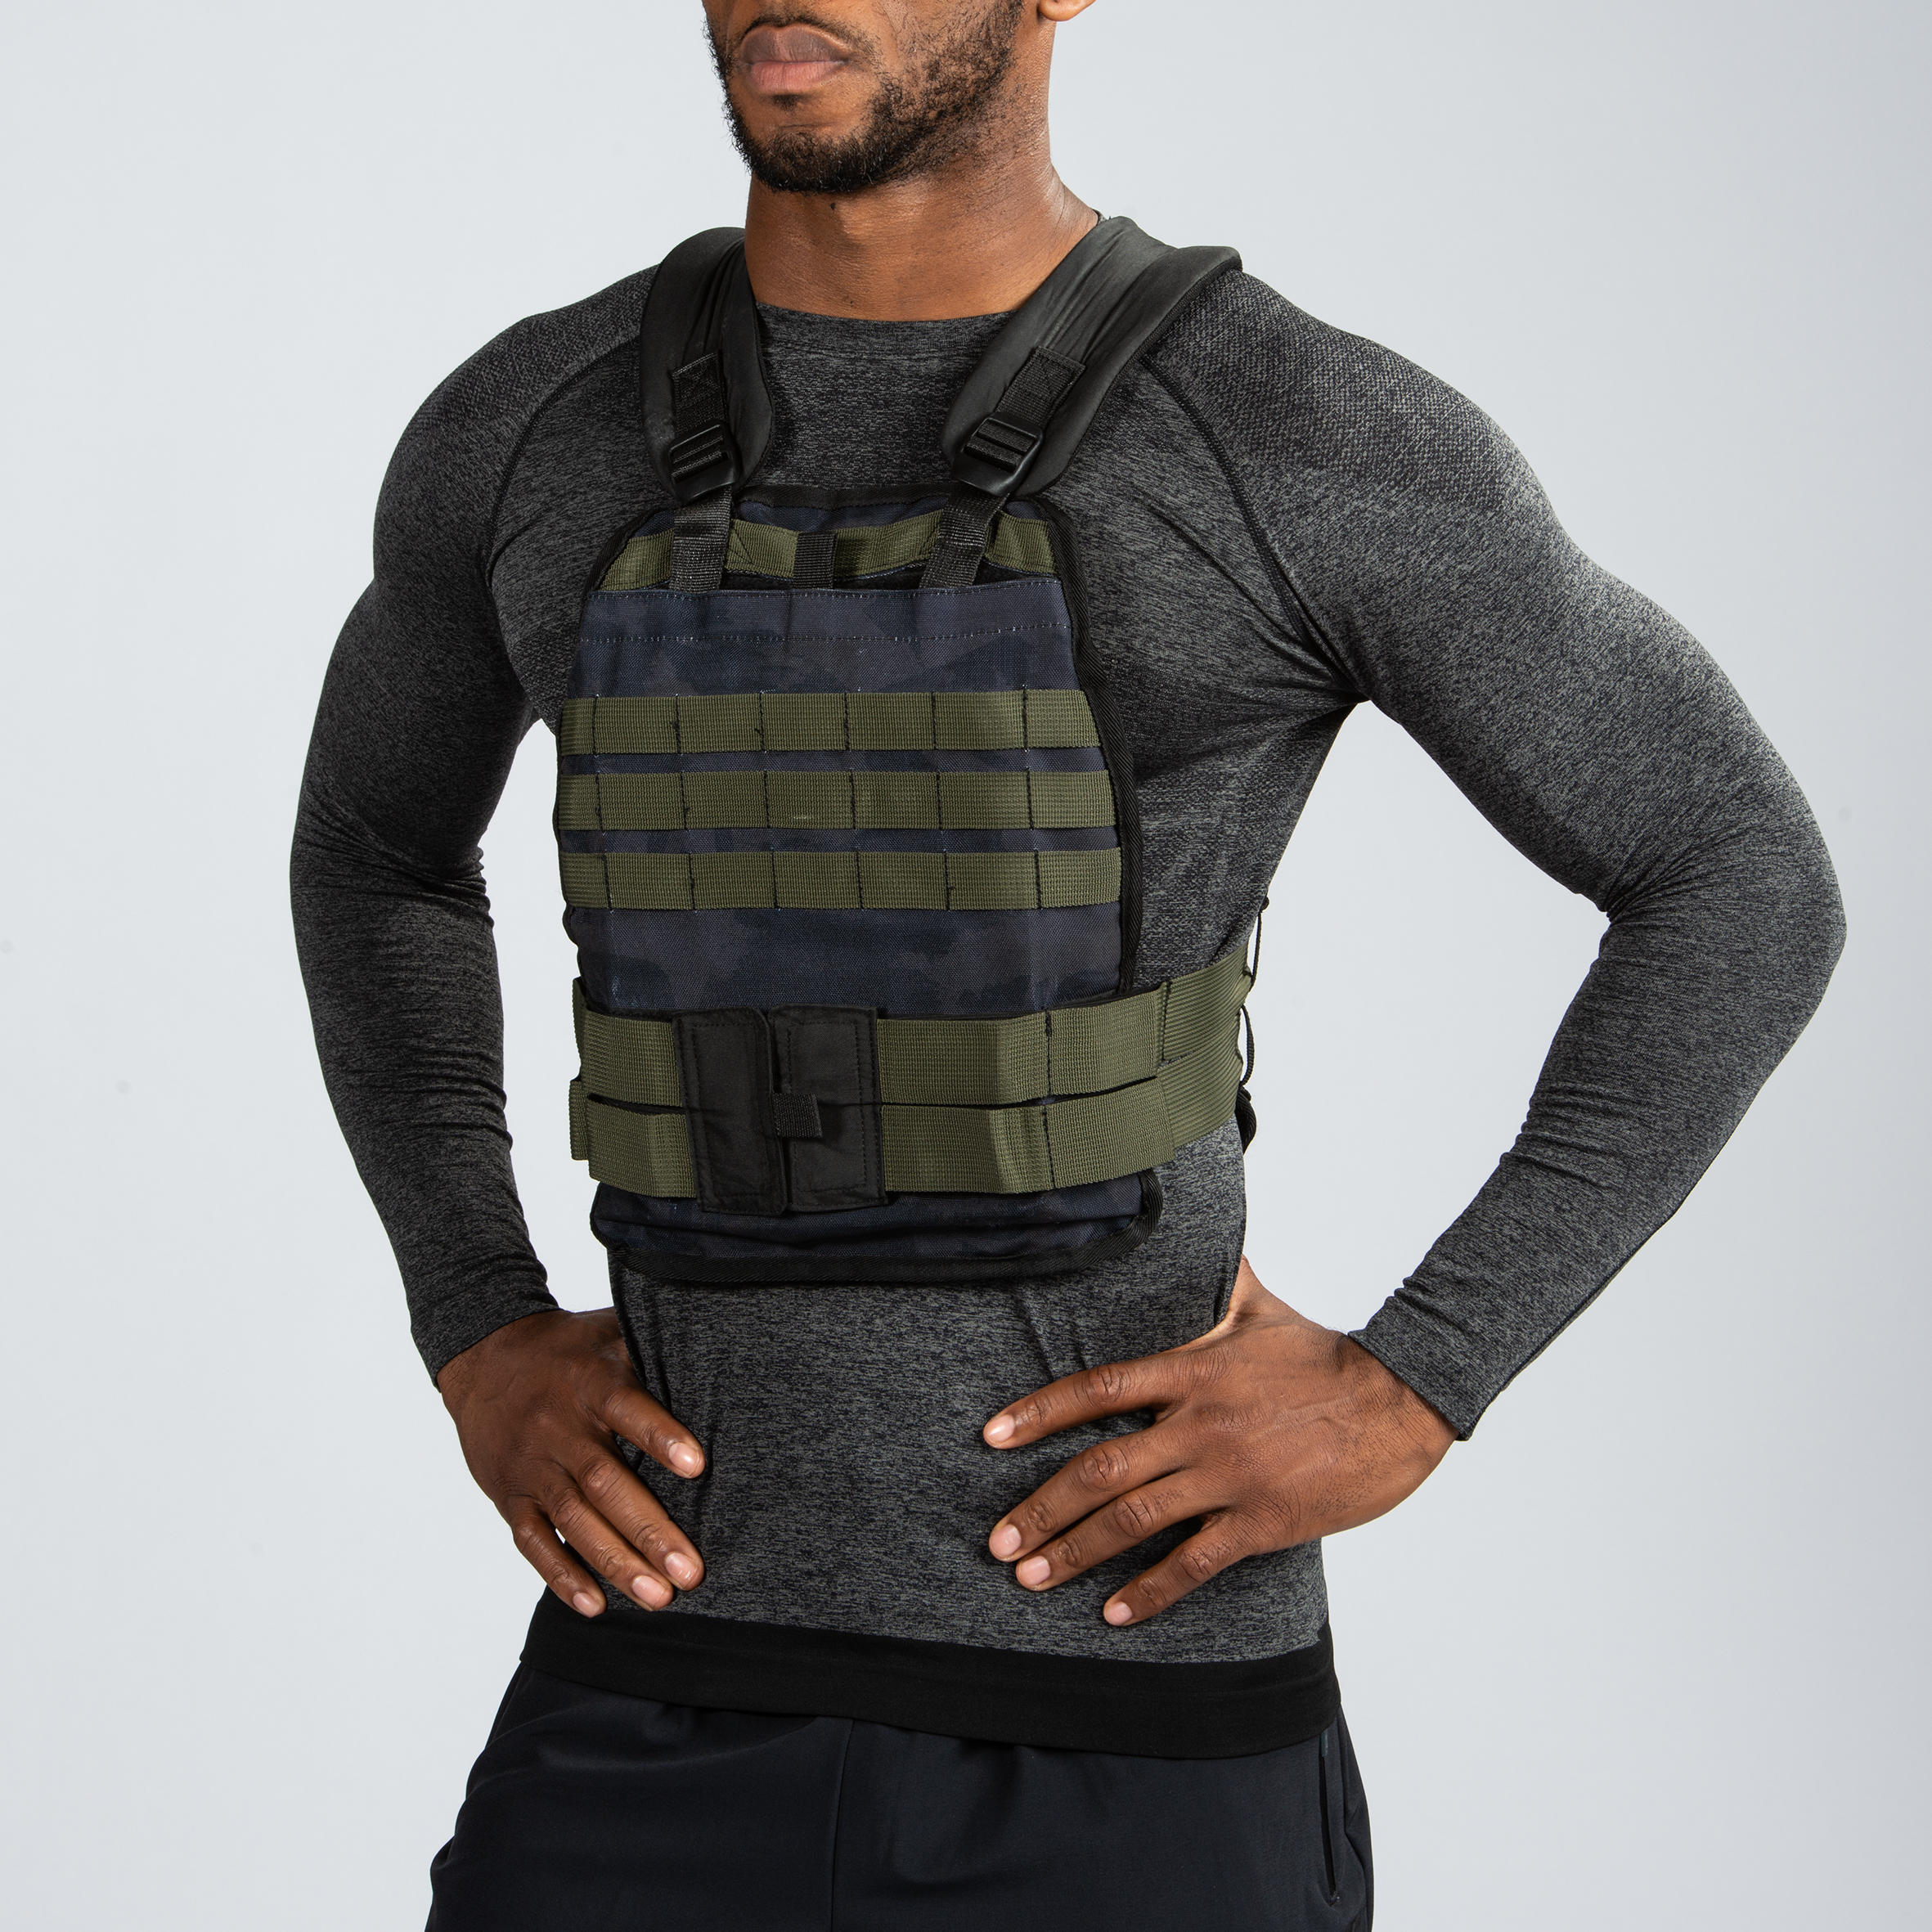 decathlon weighted vest